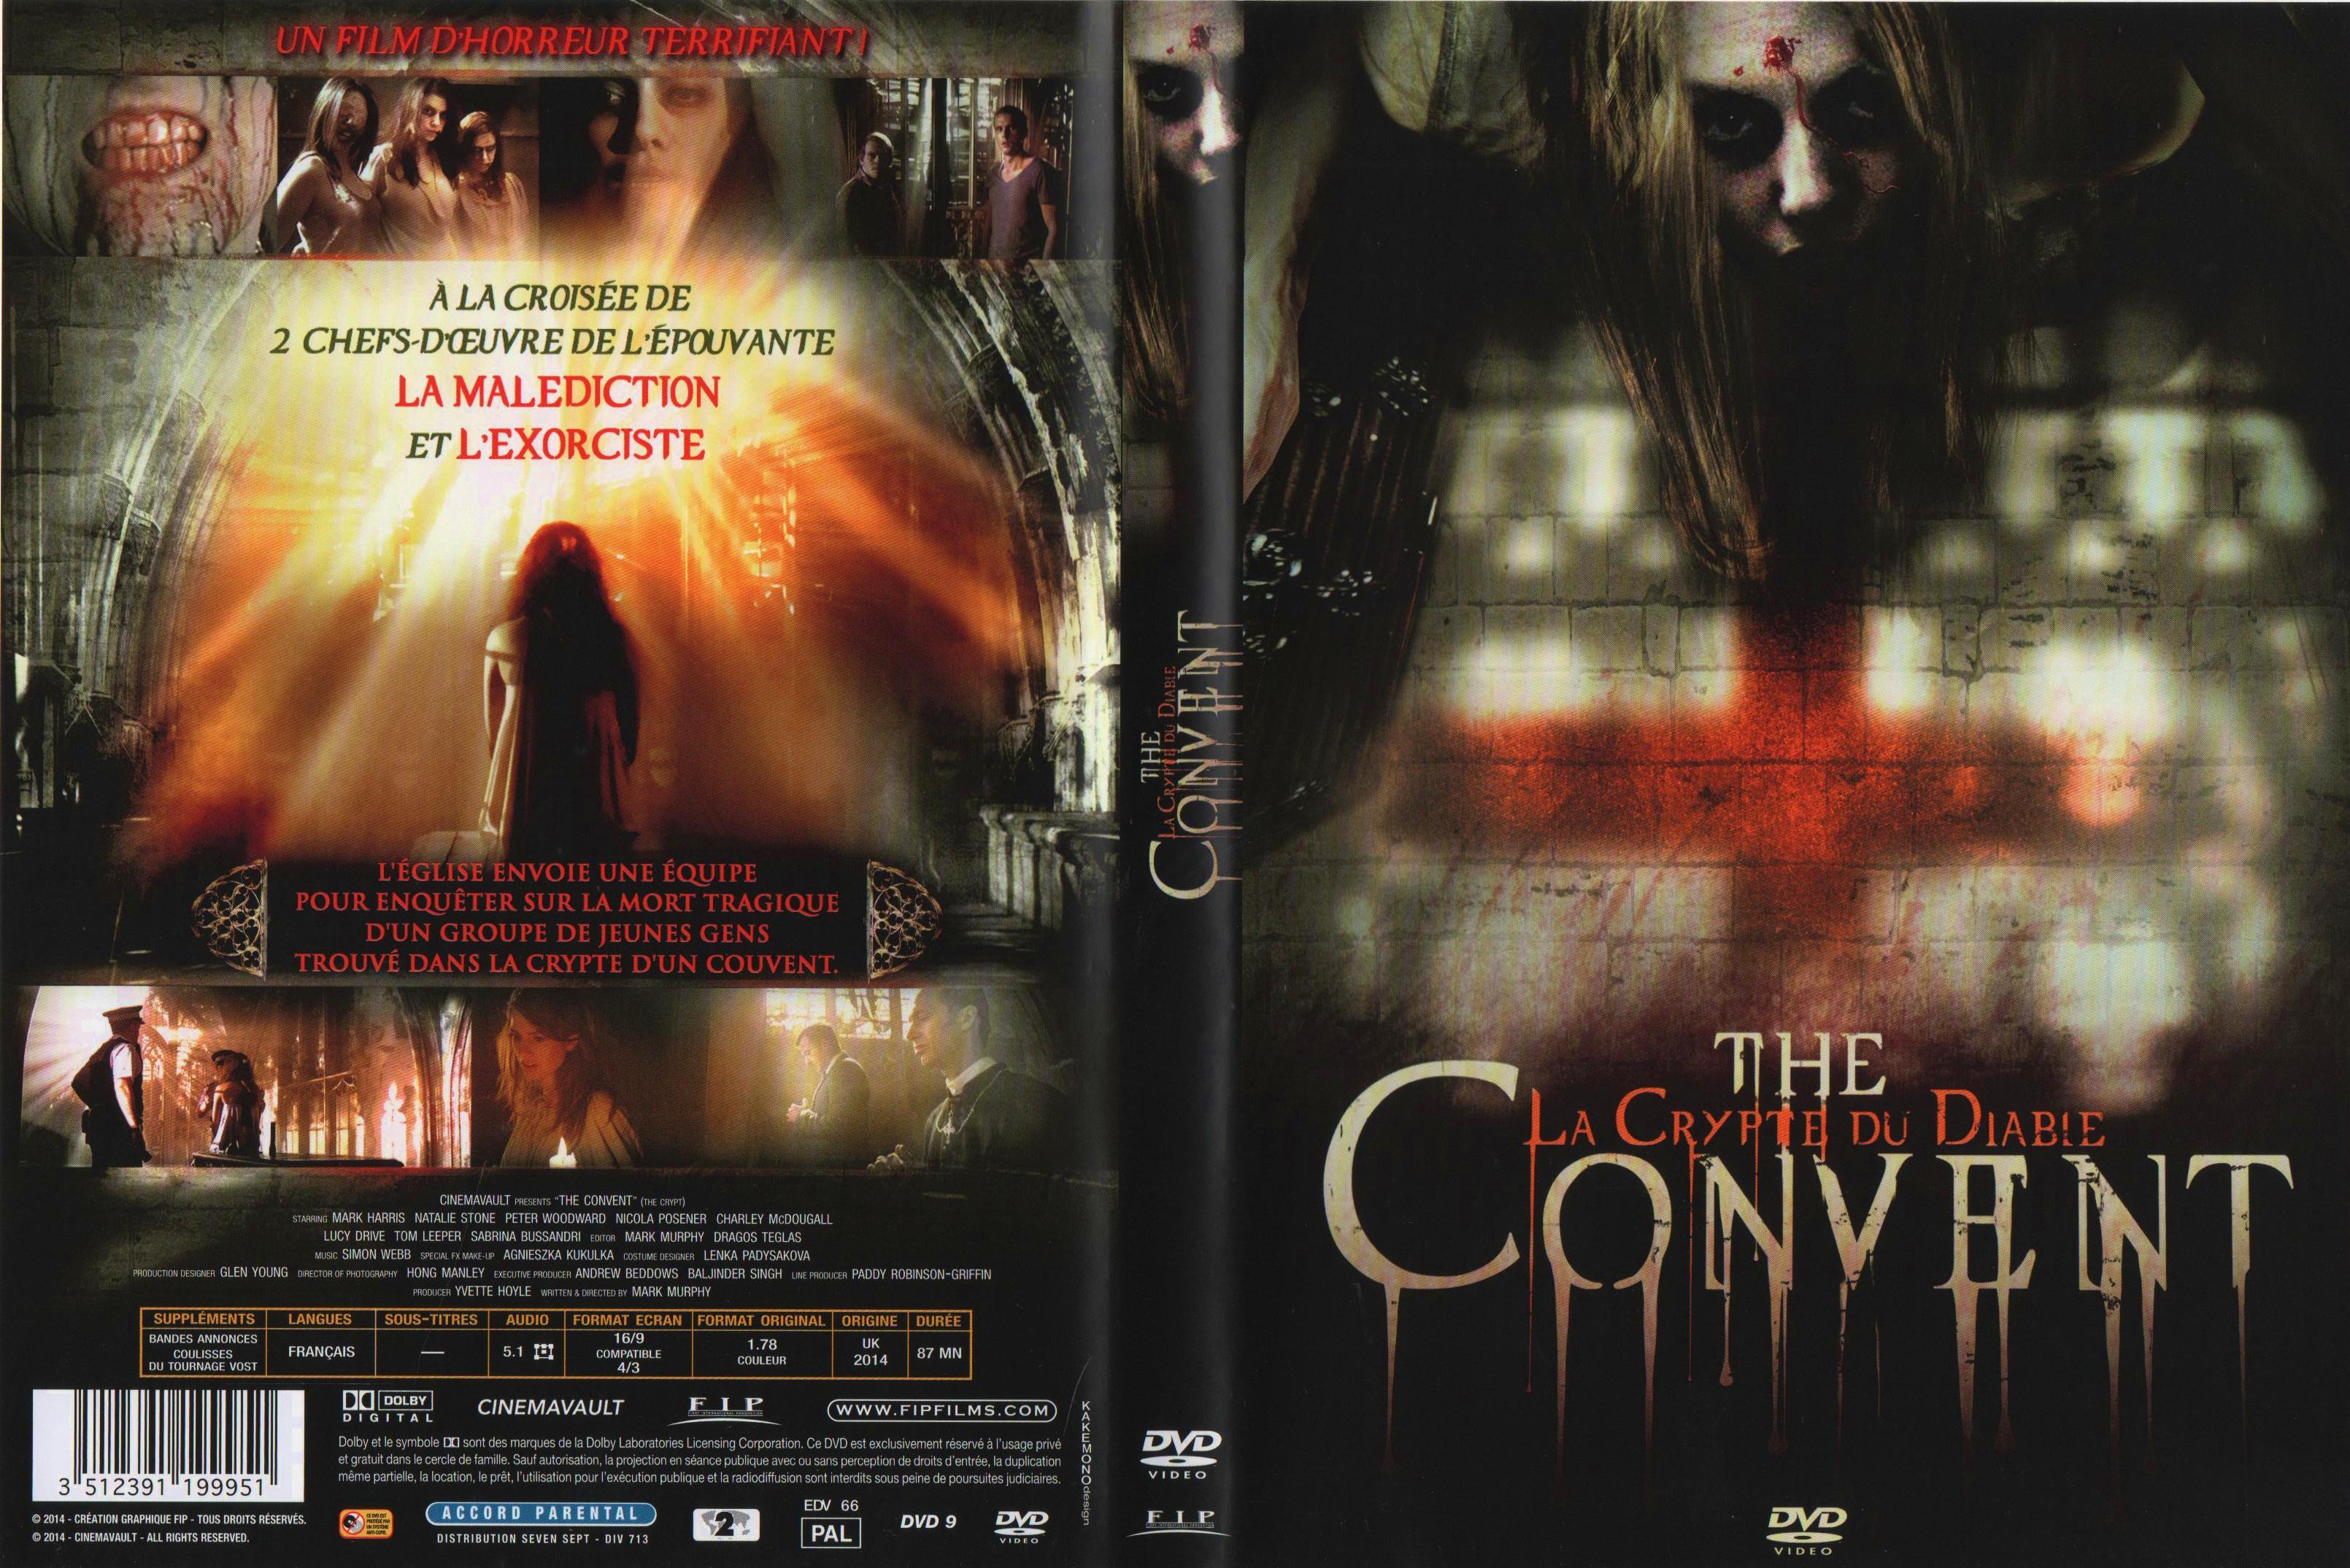 Jaquette DVD The convent la crypte du diable